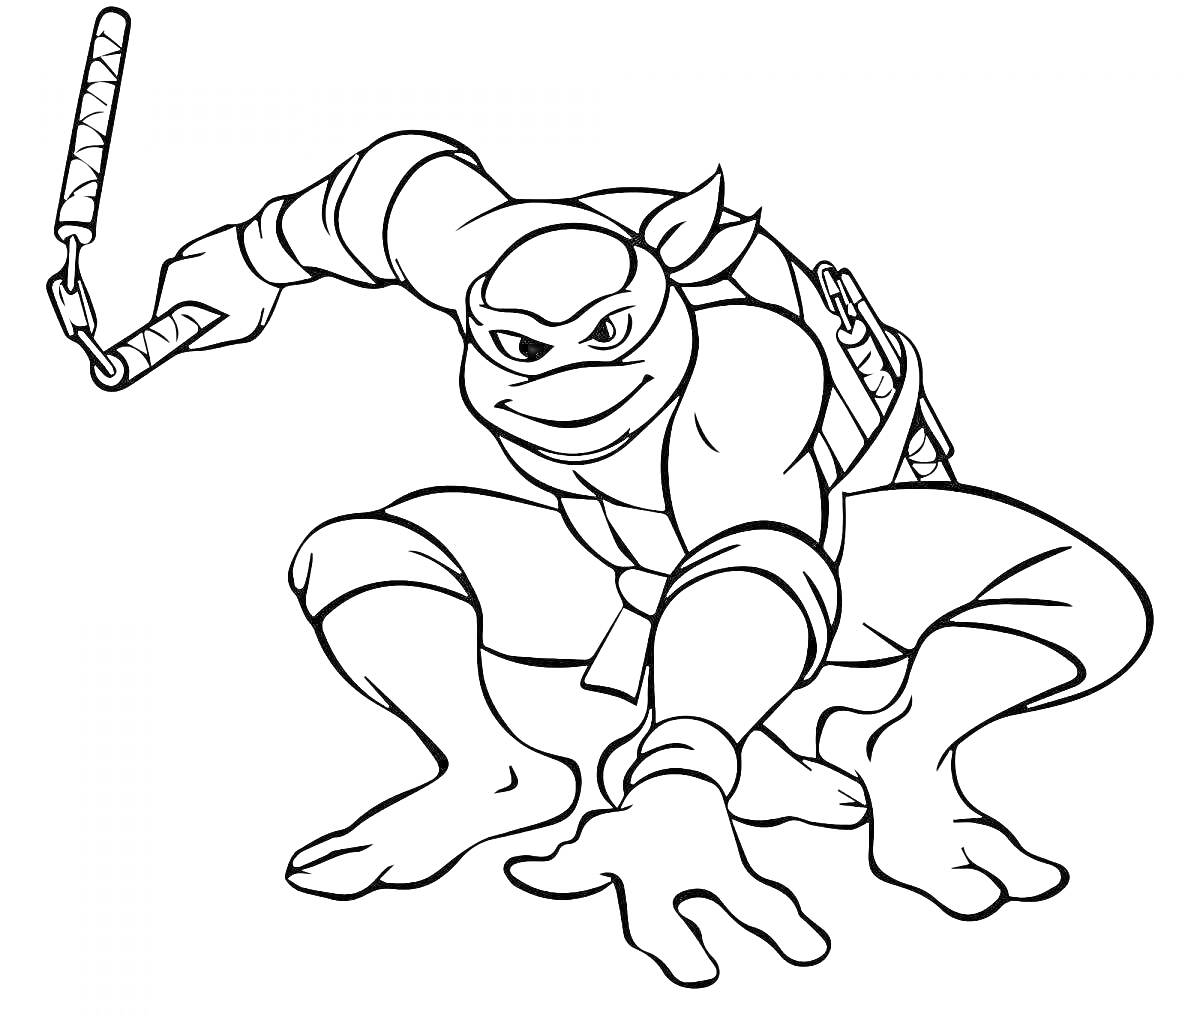 Раскраска мультяшный боевой черепаха-ниндзя с нунчаками в правой руке и катанами на спине, в боевой готовности, на корточках